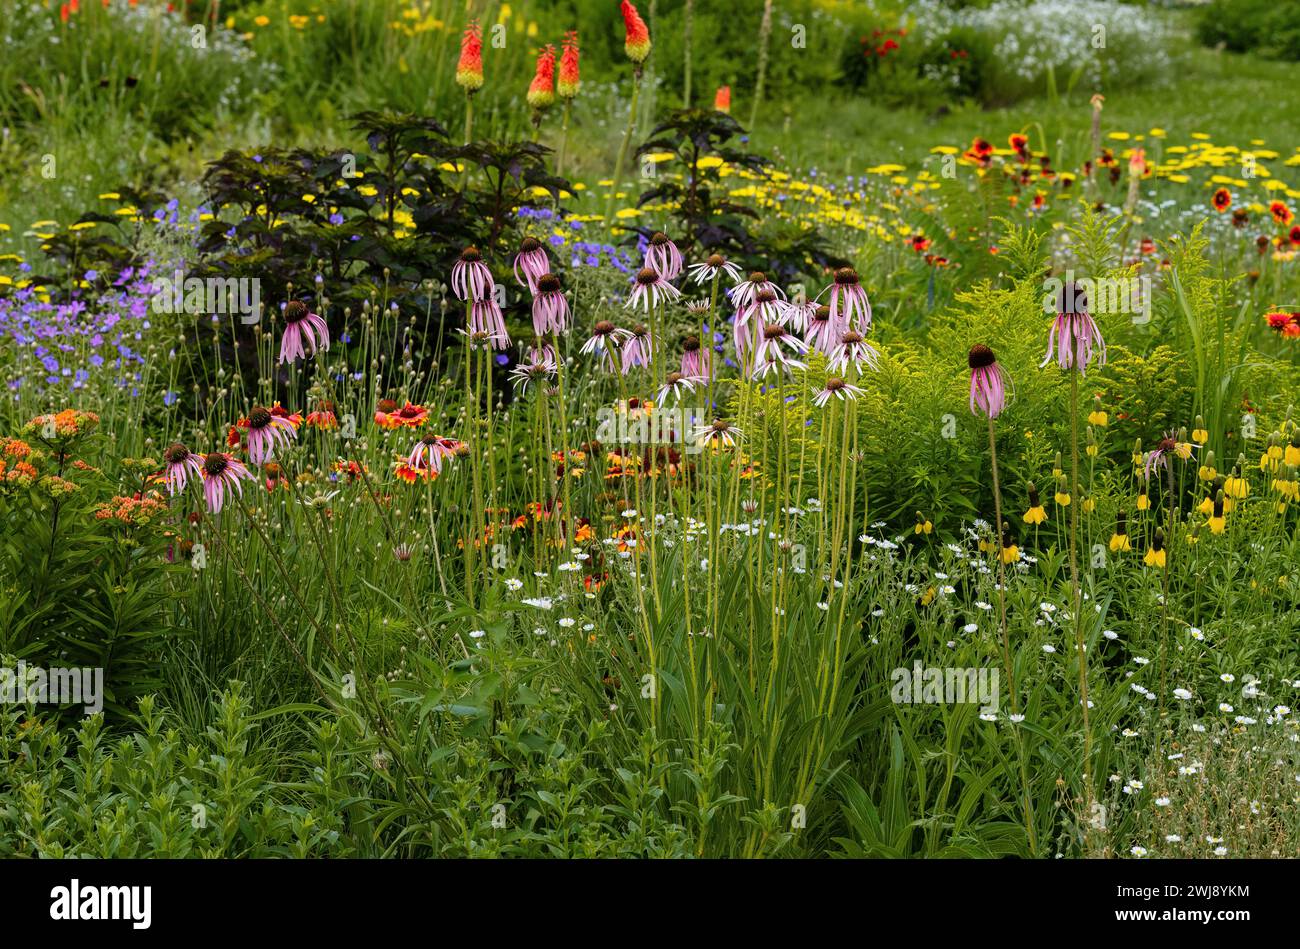 Un giardino xeriscape con un'ampia varietà di piante resistenti alla siccità, tra cui Echinacea, Coneflower, Gaillardia, Geranium, piante da poker e molto altro ancora. Foto Stock